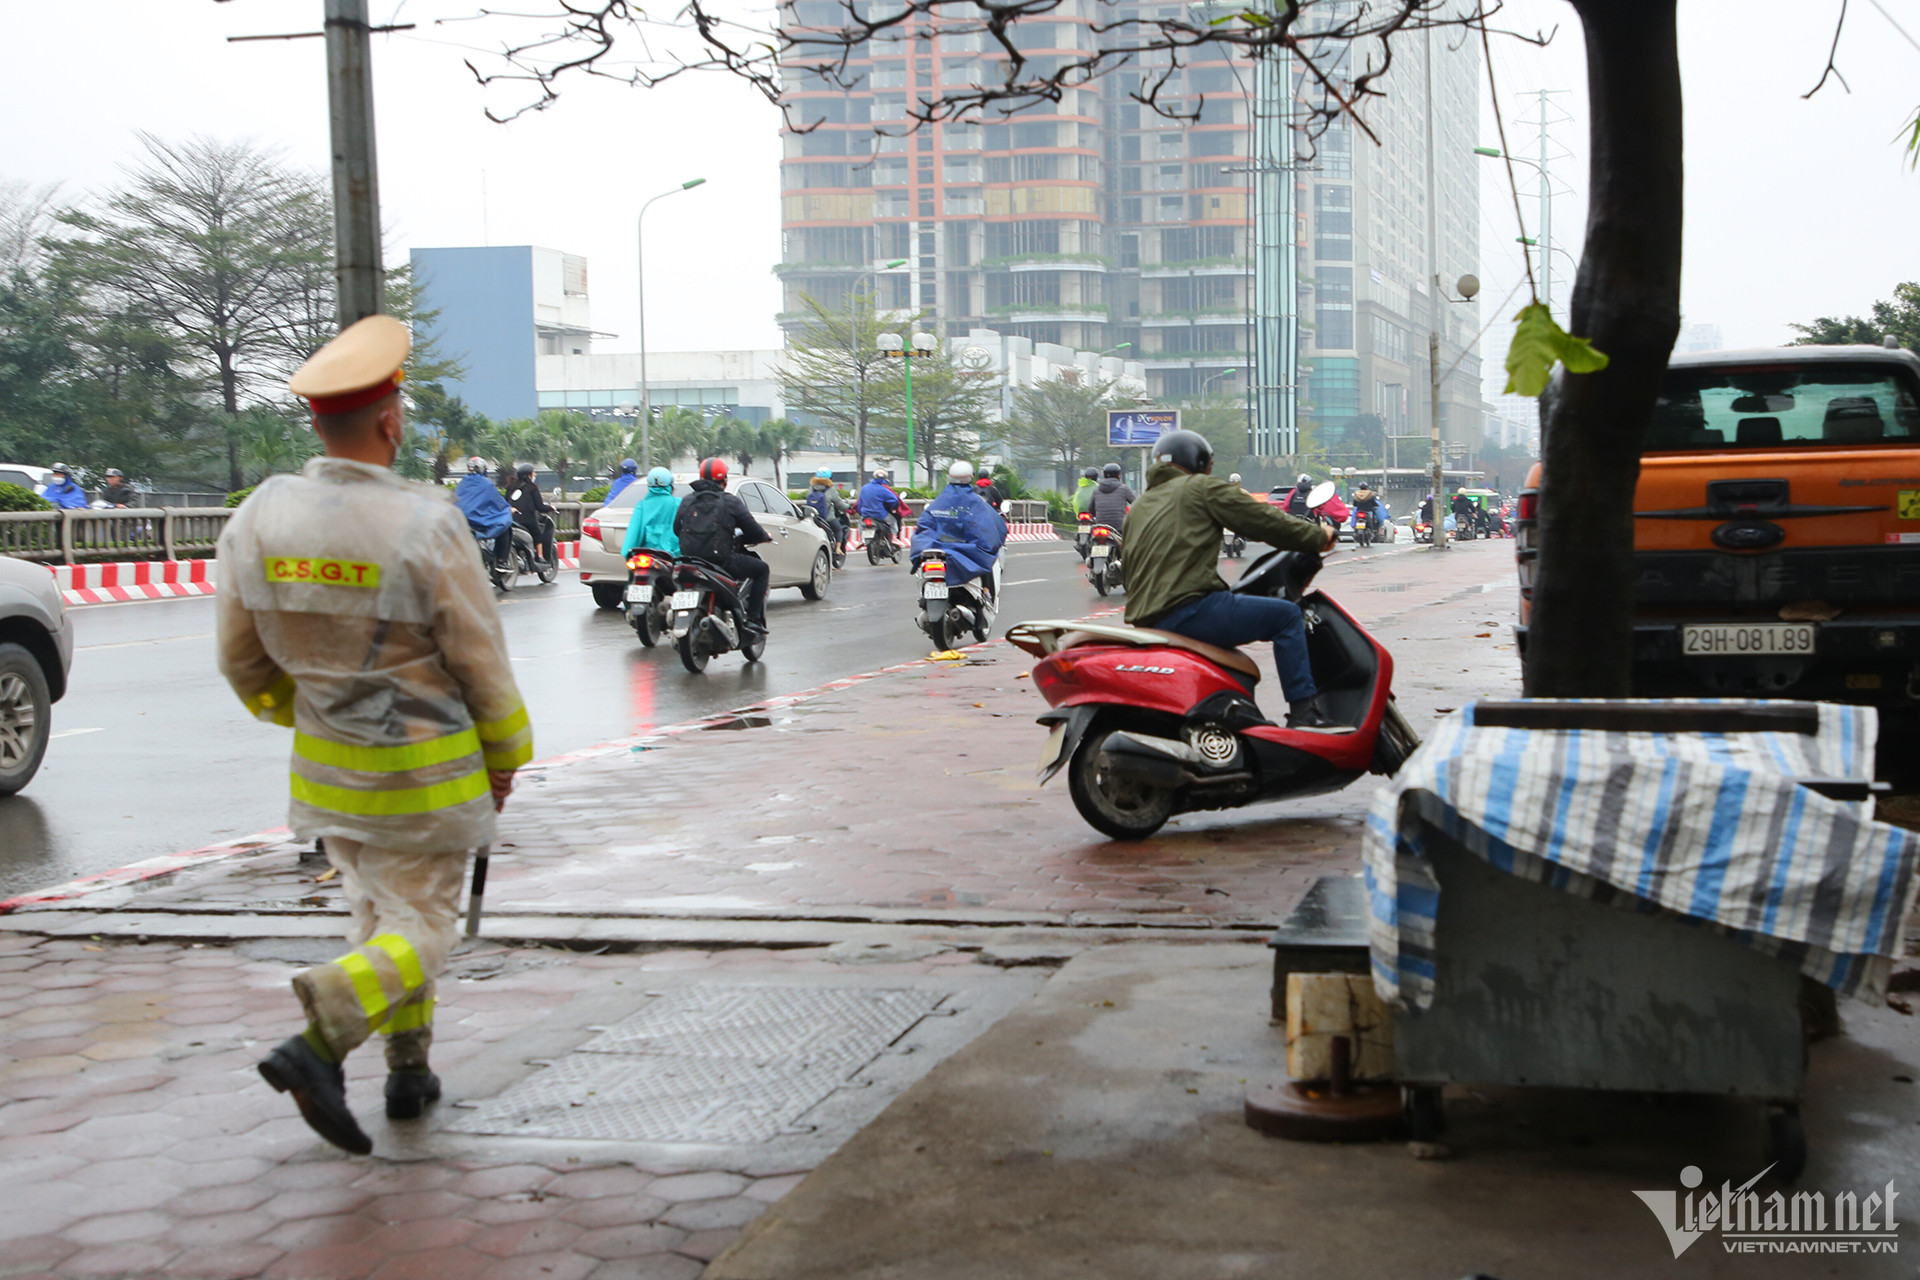 View - Cô gái bật khóc nức nở khi nhận phiếu phạt lỗi đi ngược chiều đường ở Hà Nội